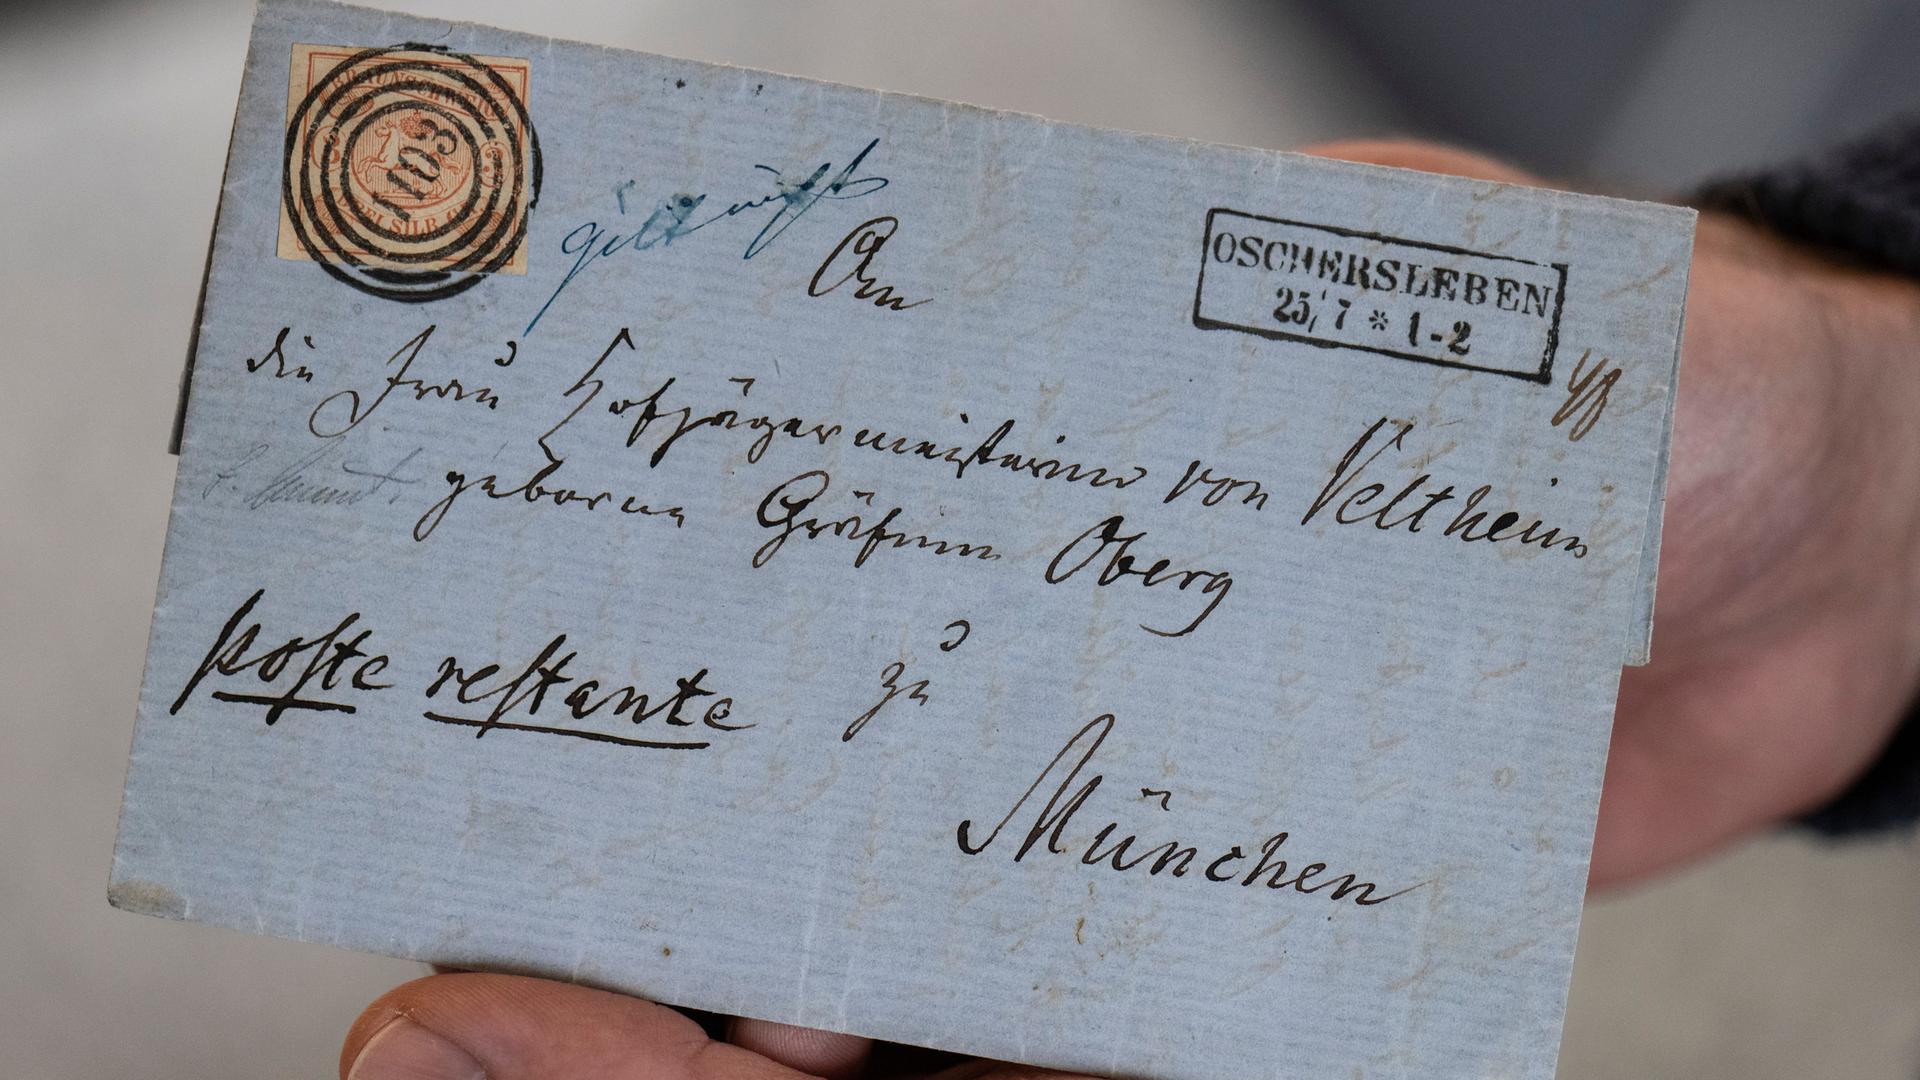 Der zur Auktion stehende historische Brief "Hans Freiherr von Veltheim an seine Gattin" wird im Auktionshaus Köhler in Wiesbaden gezeigt.